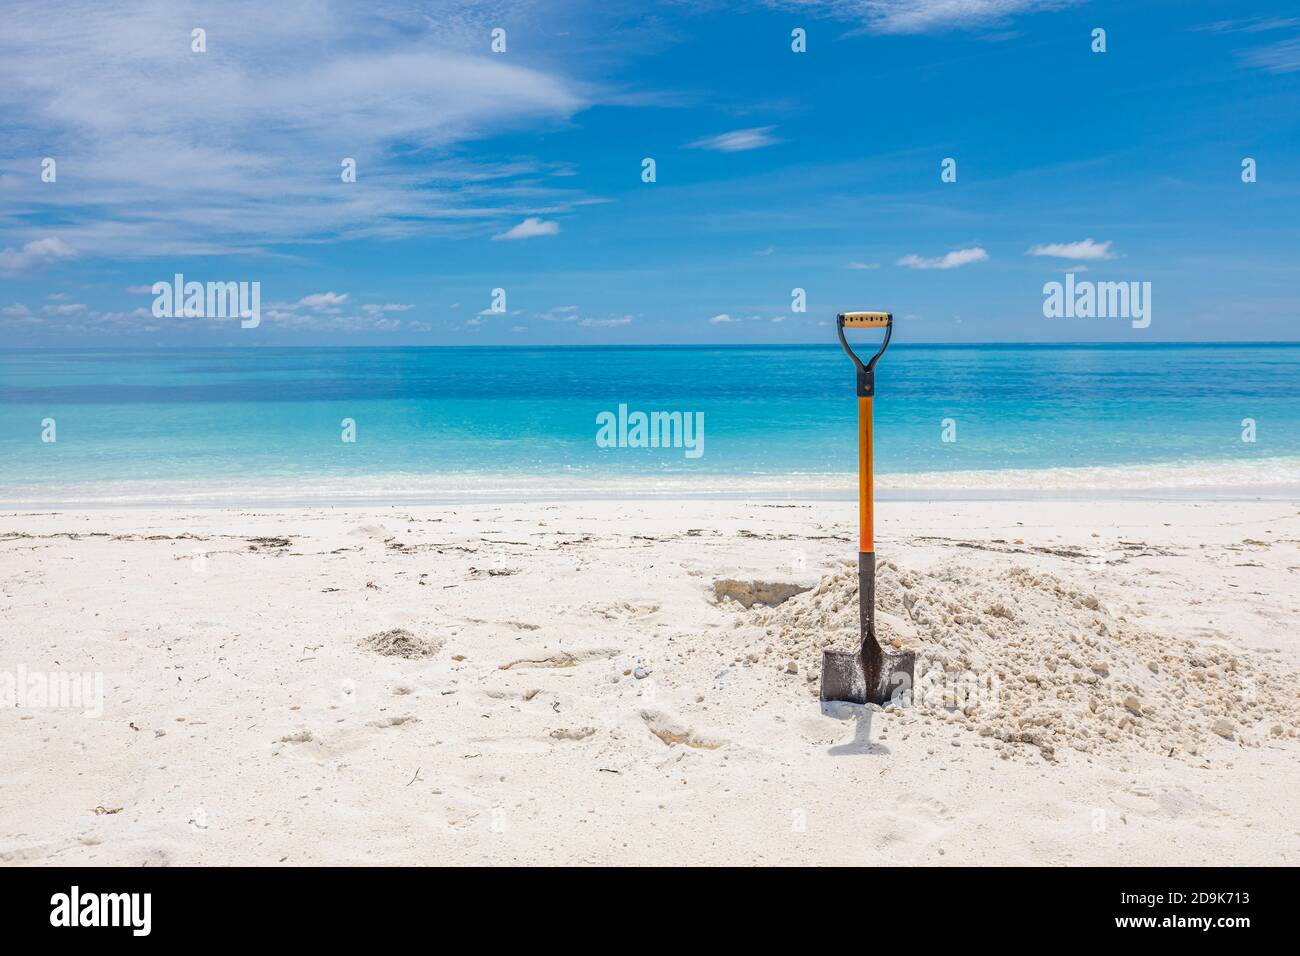 Schaufel in Sand am Strand. Weitwinkelbild einer Schaufel im Sand am Strand unter einem teilweise bewölkten blauen Himmel. Stockfoto